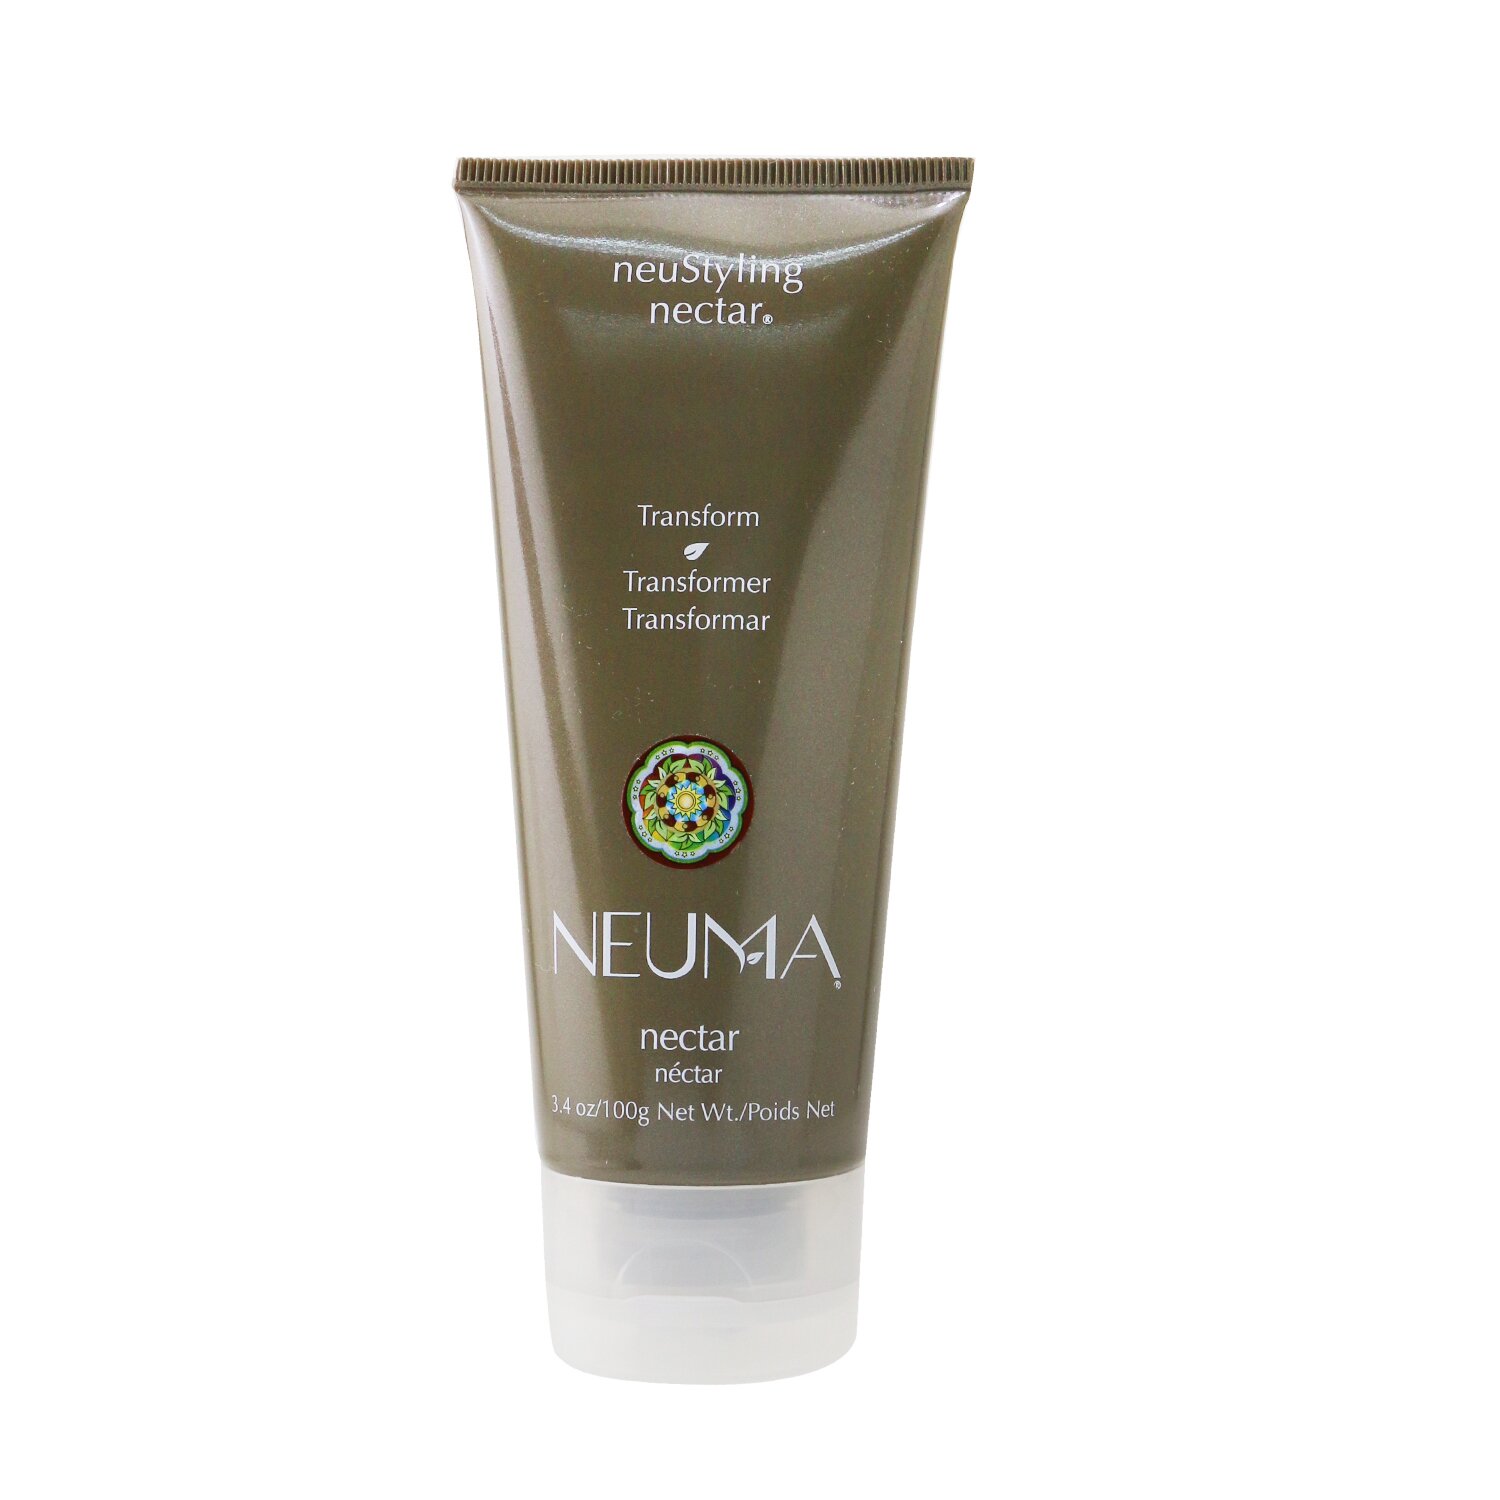 Neuma - neuStyling Nectar 塑型髮膠